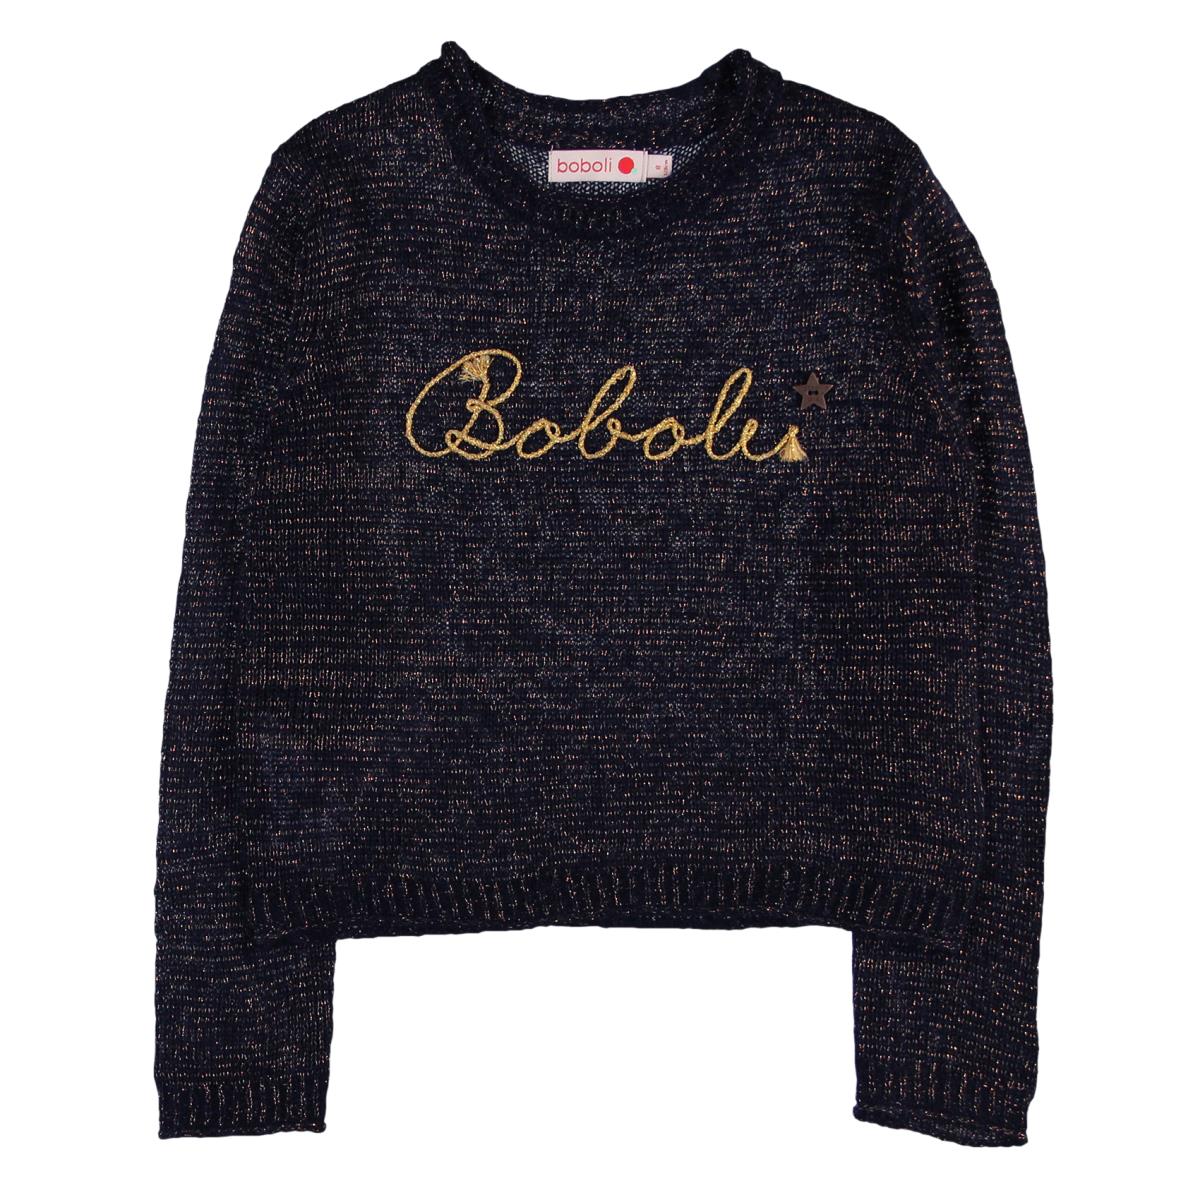 Pletený sveter s nápisom Boboli 724003-2440